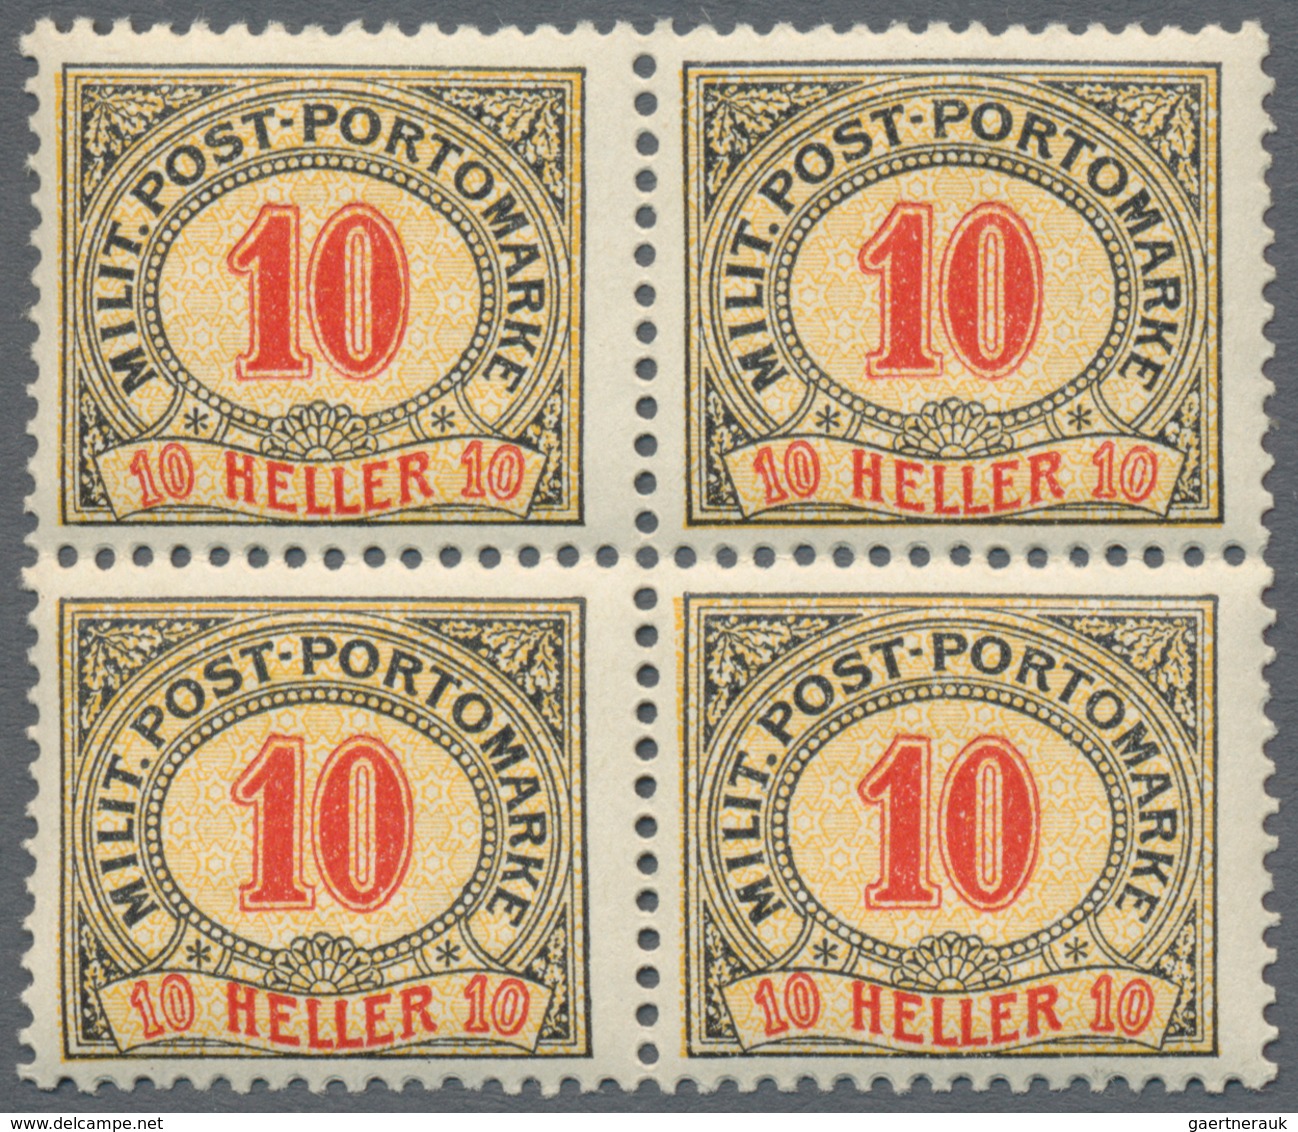 Bosnien und Herzegowina (Österreich 1879/1918) - Portomarken: 1904, Ziffern-Portomarken 1 H bis 200